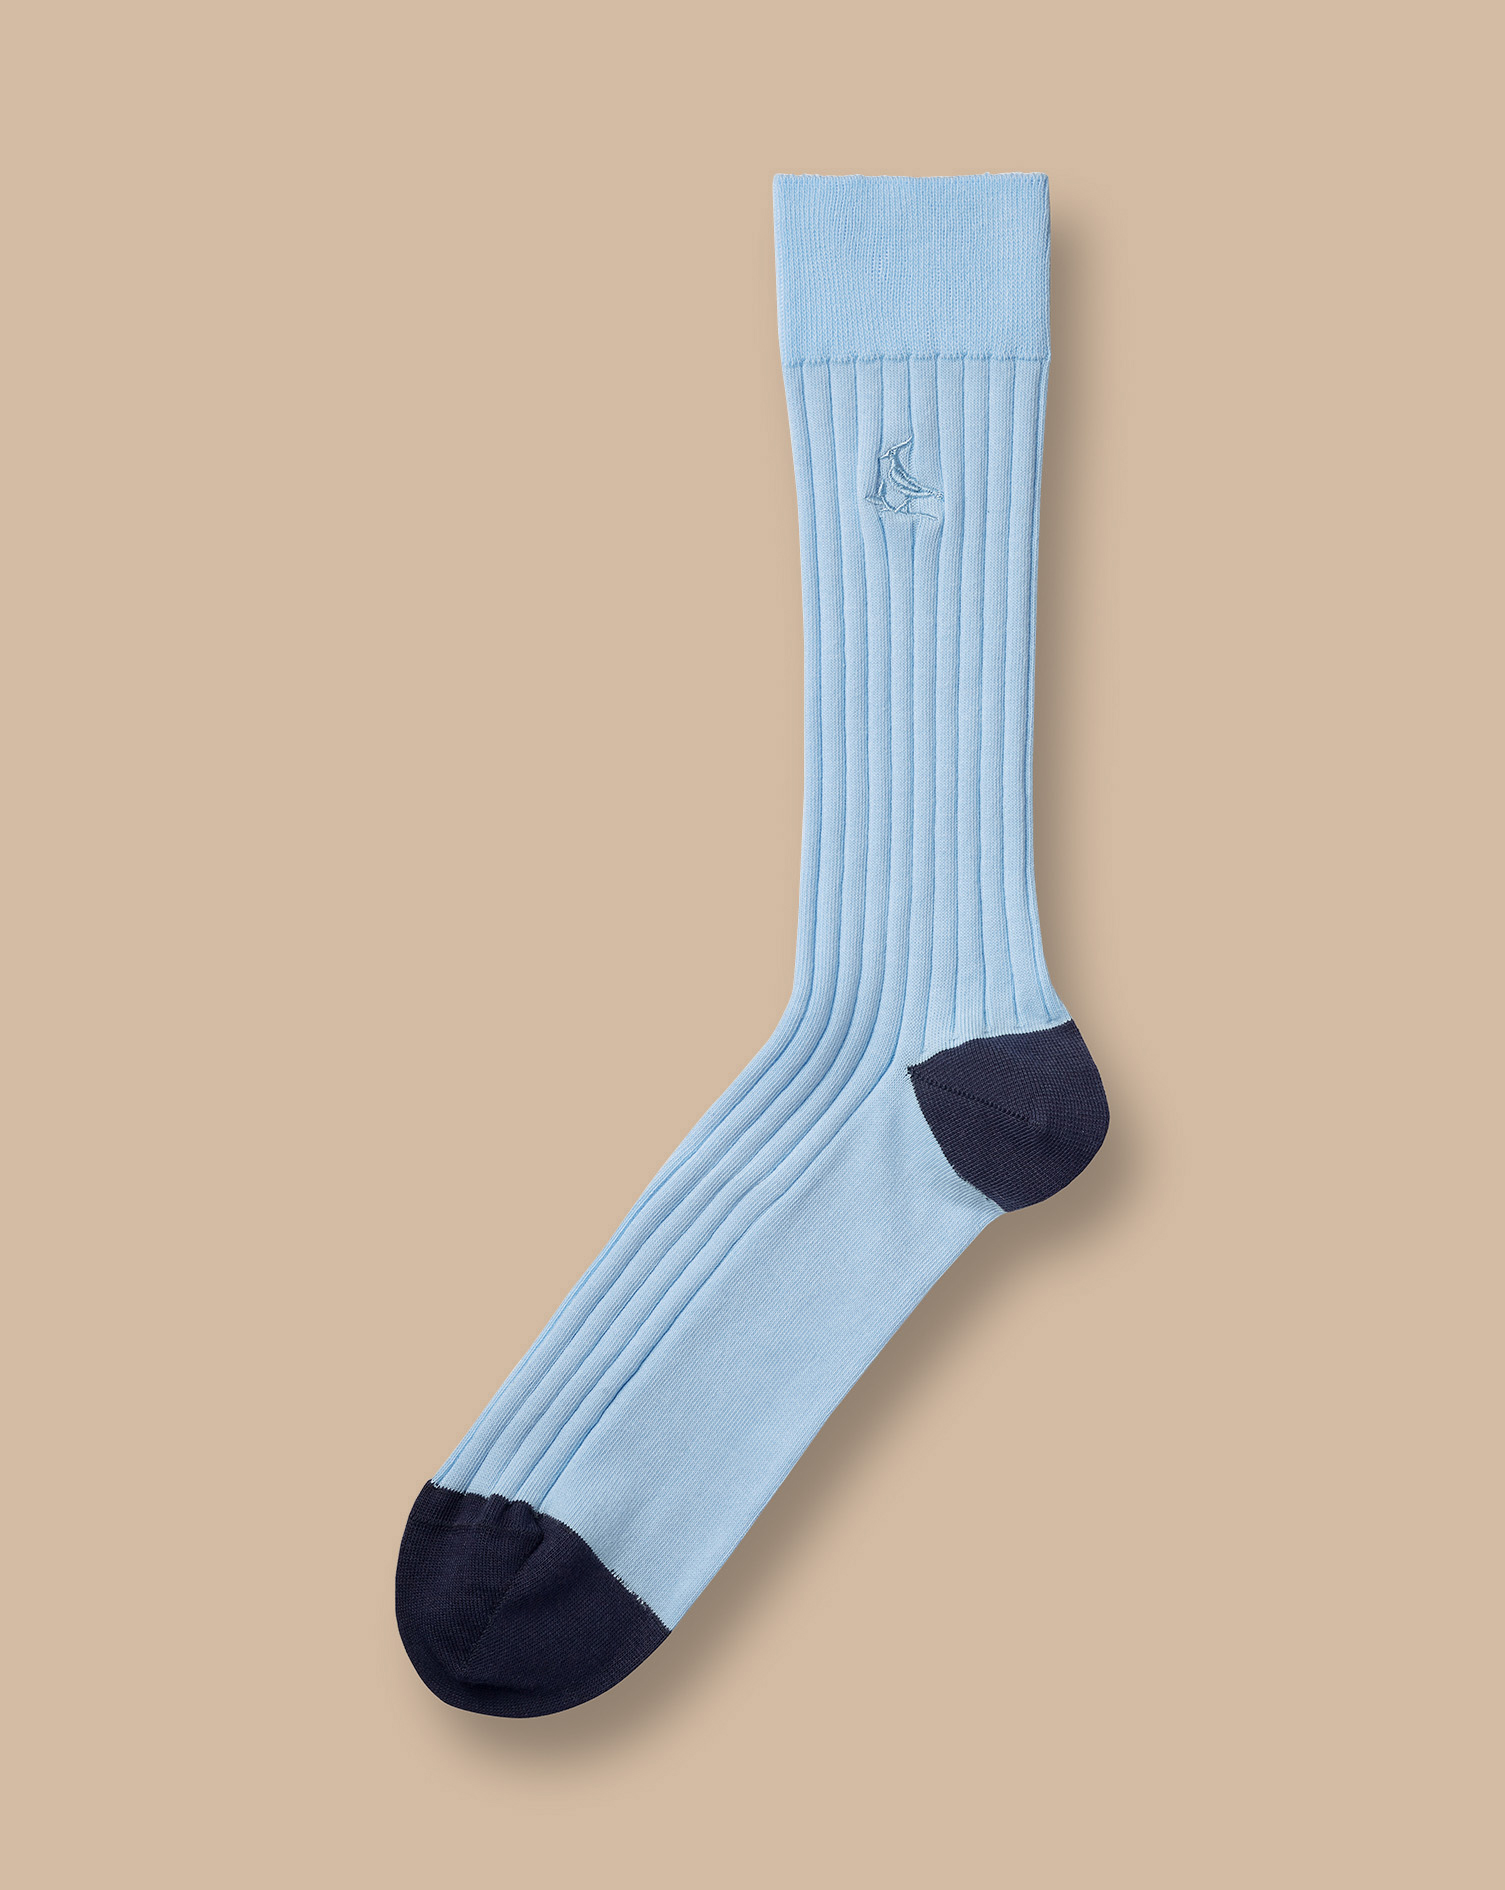 Men's Charles Tyrwhitt Rib Socks - Light Blue Size 6-10 Cotton
